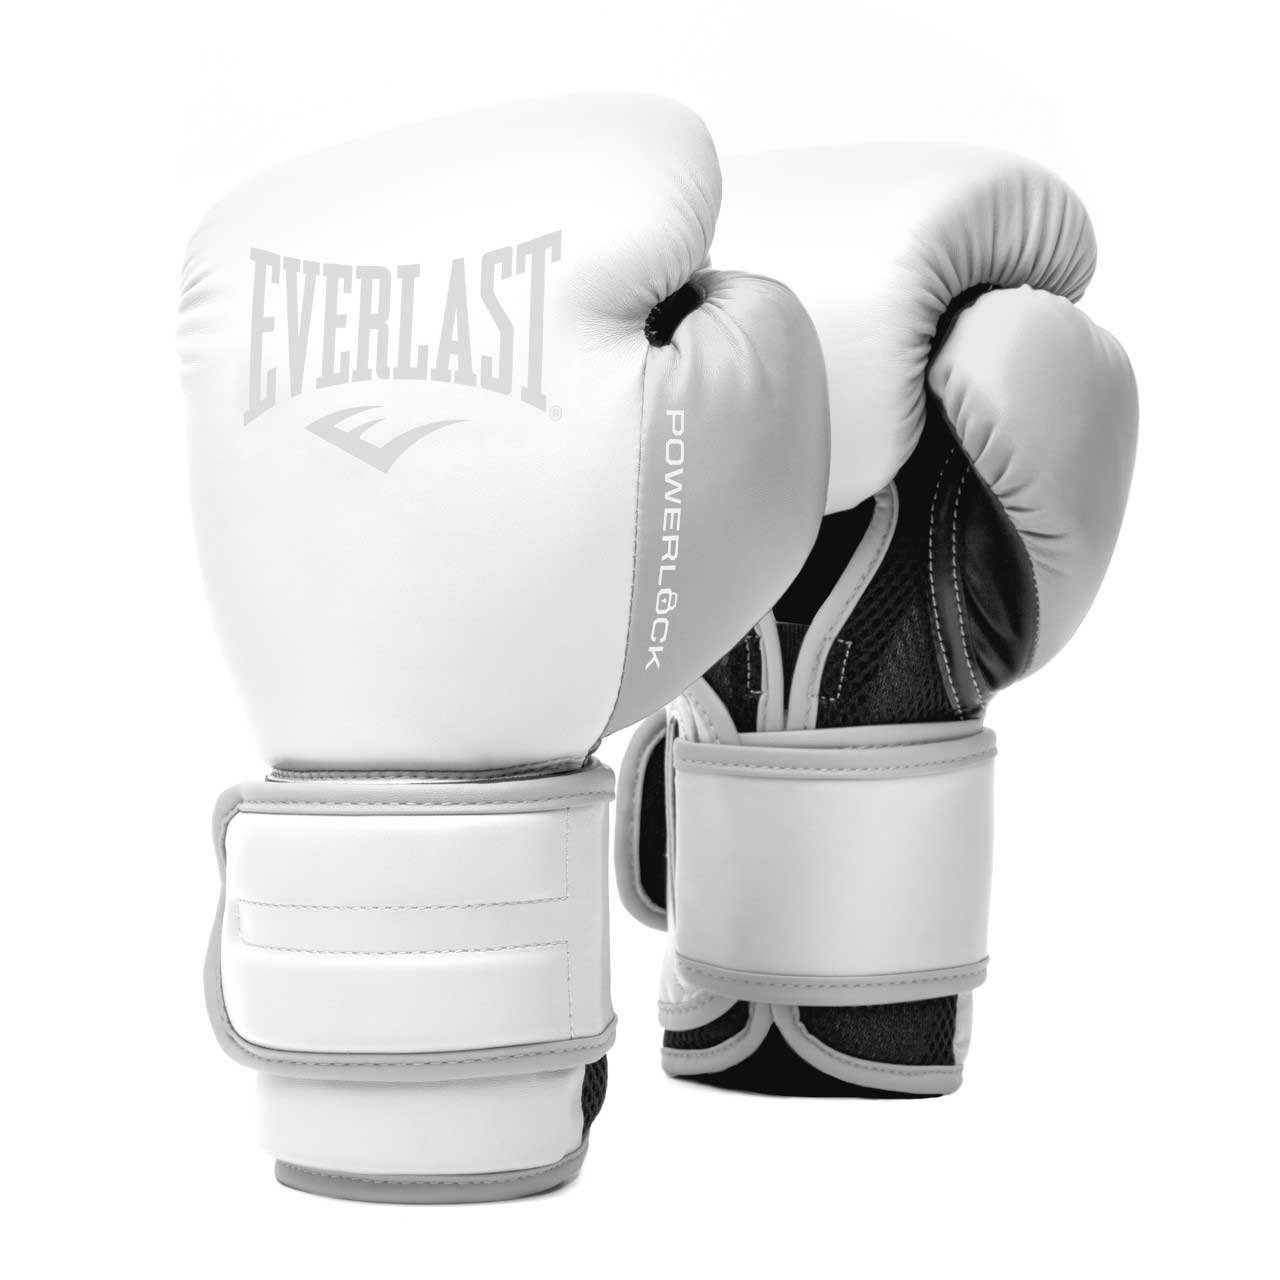 Everlast Boxhandschuhe Powerlock Schwarz/Weiss Profi Leder Training Handschuhe